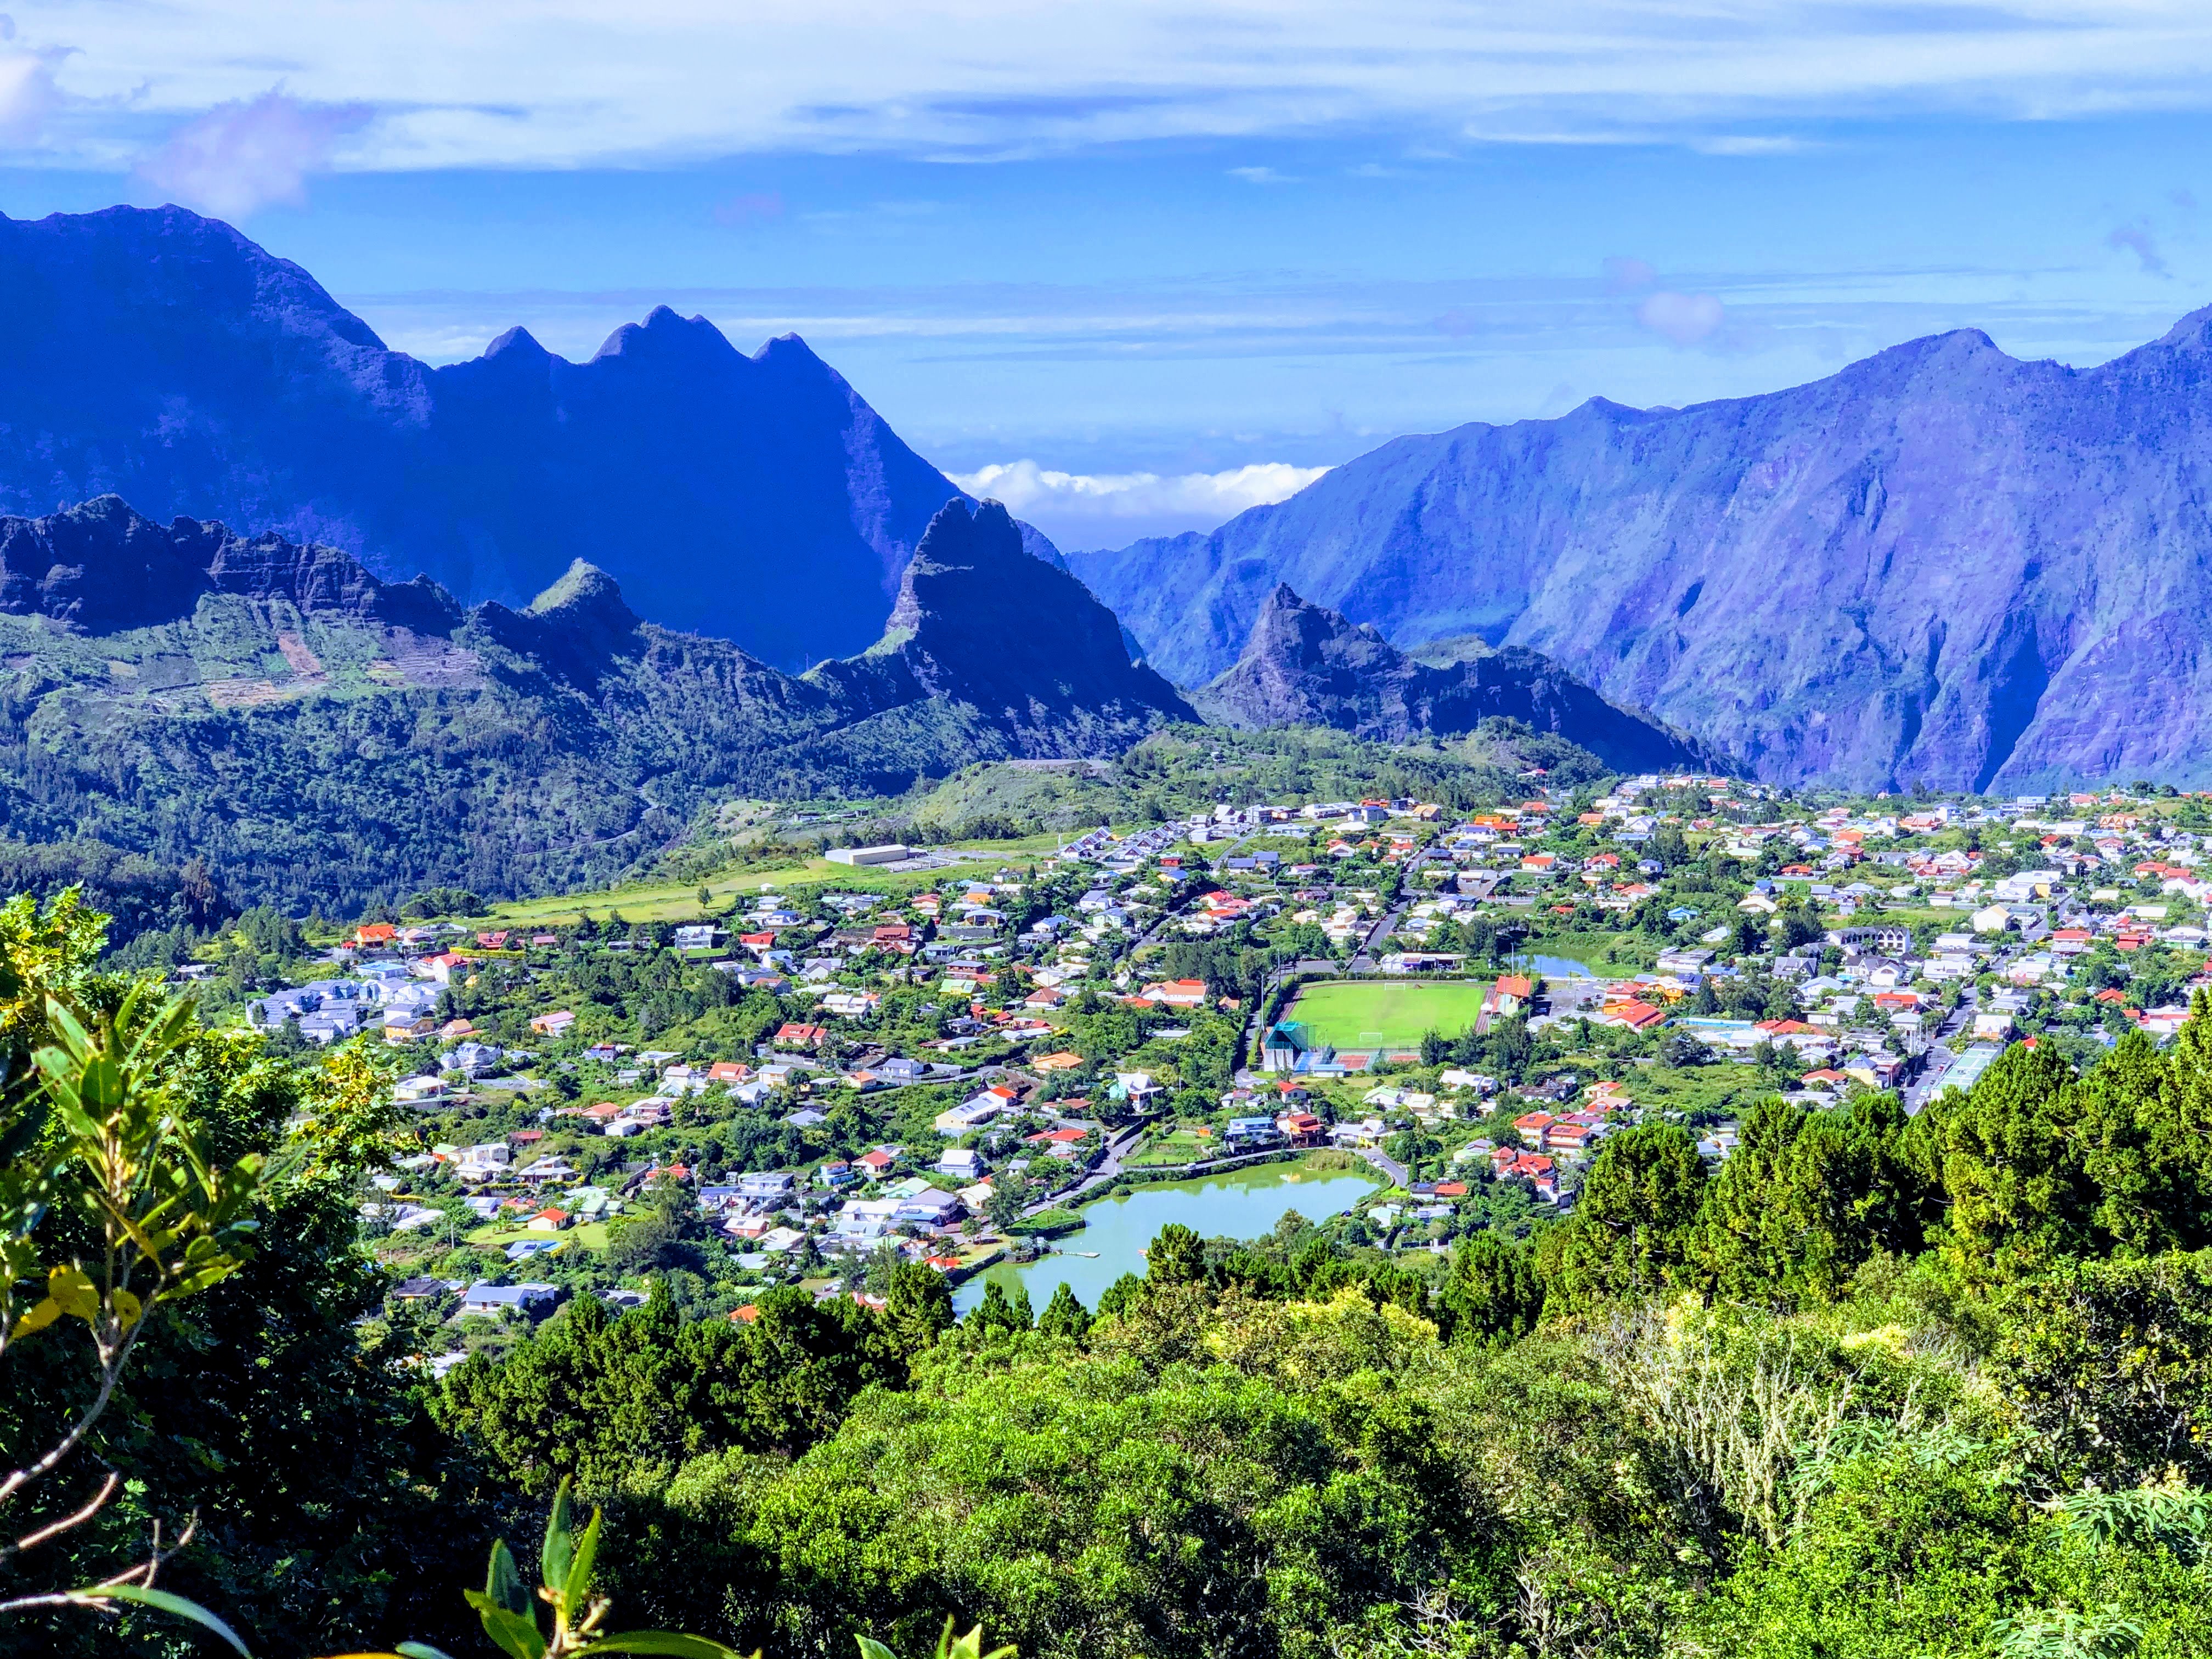 La Réunion : l'irrésistible ascension du haut de gamme hôtelier